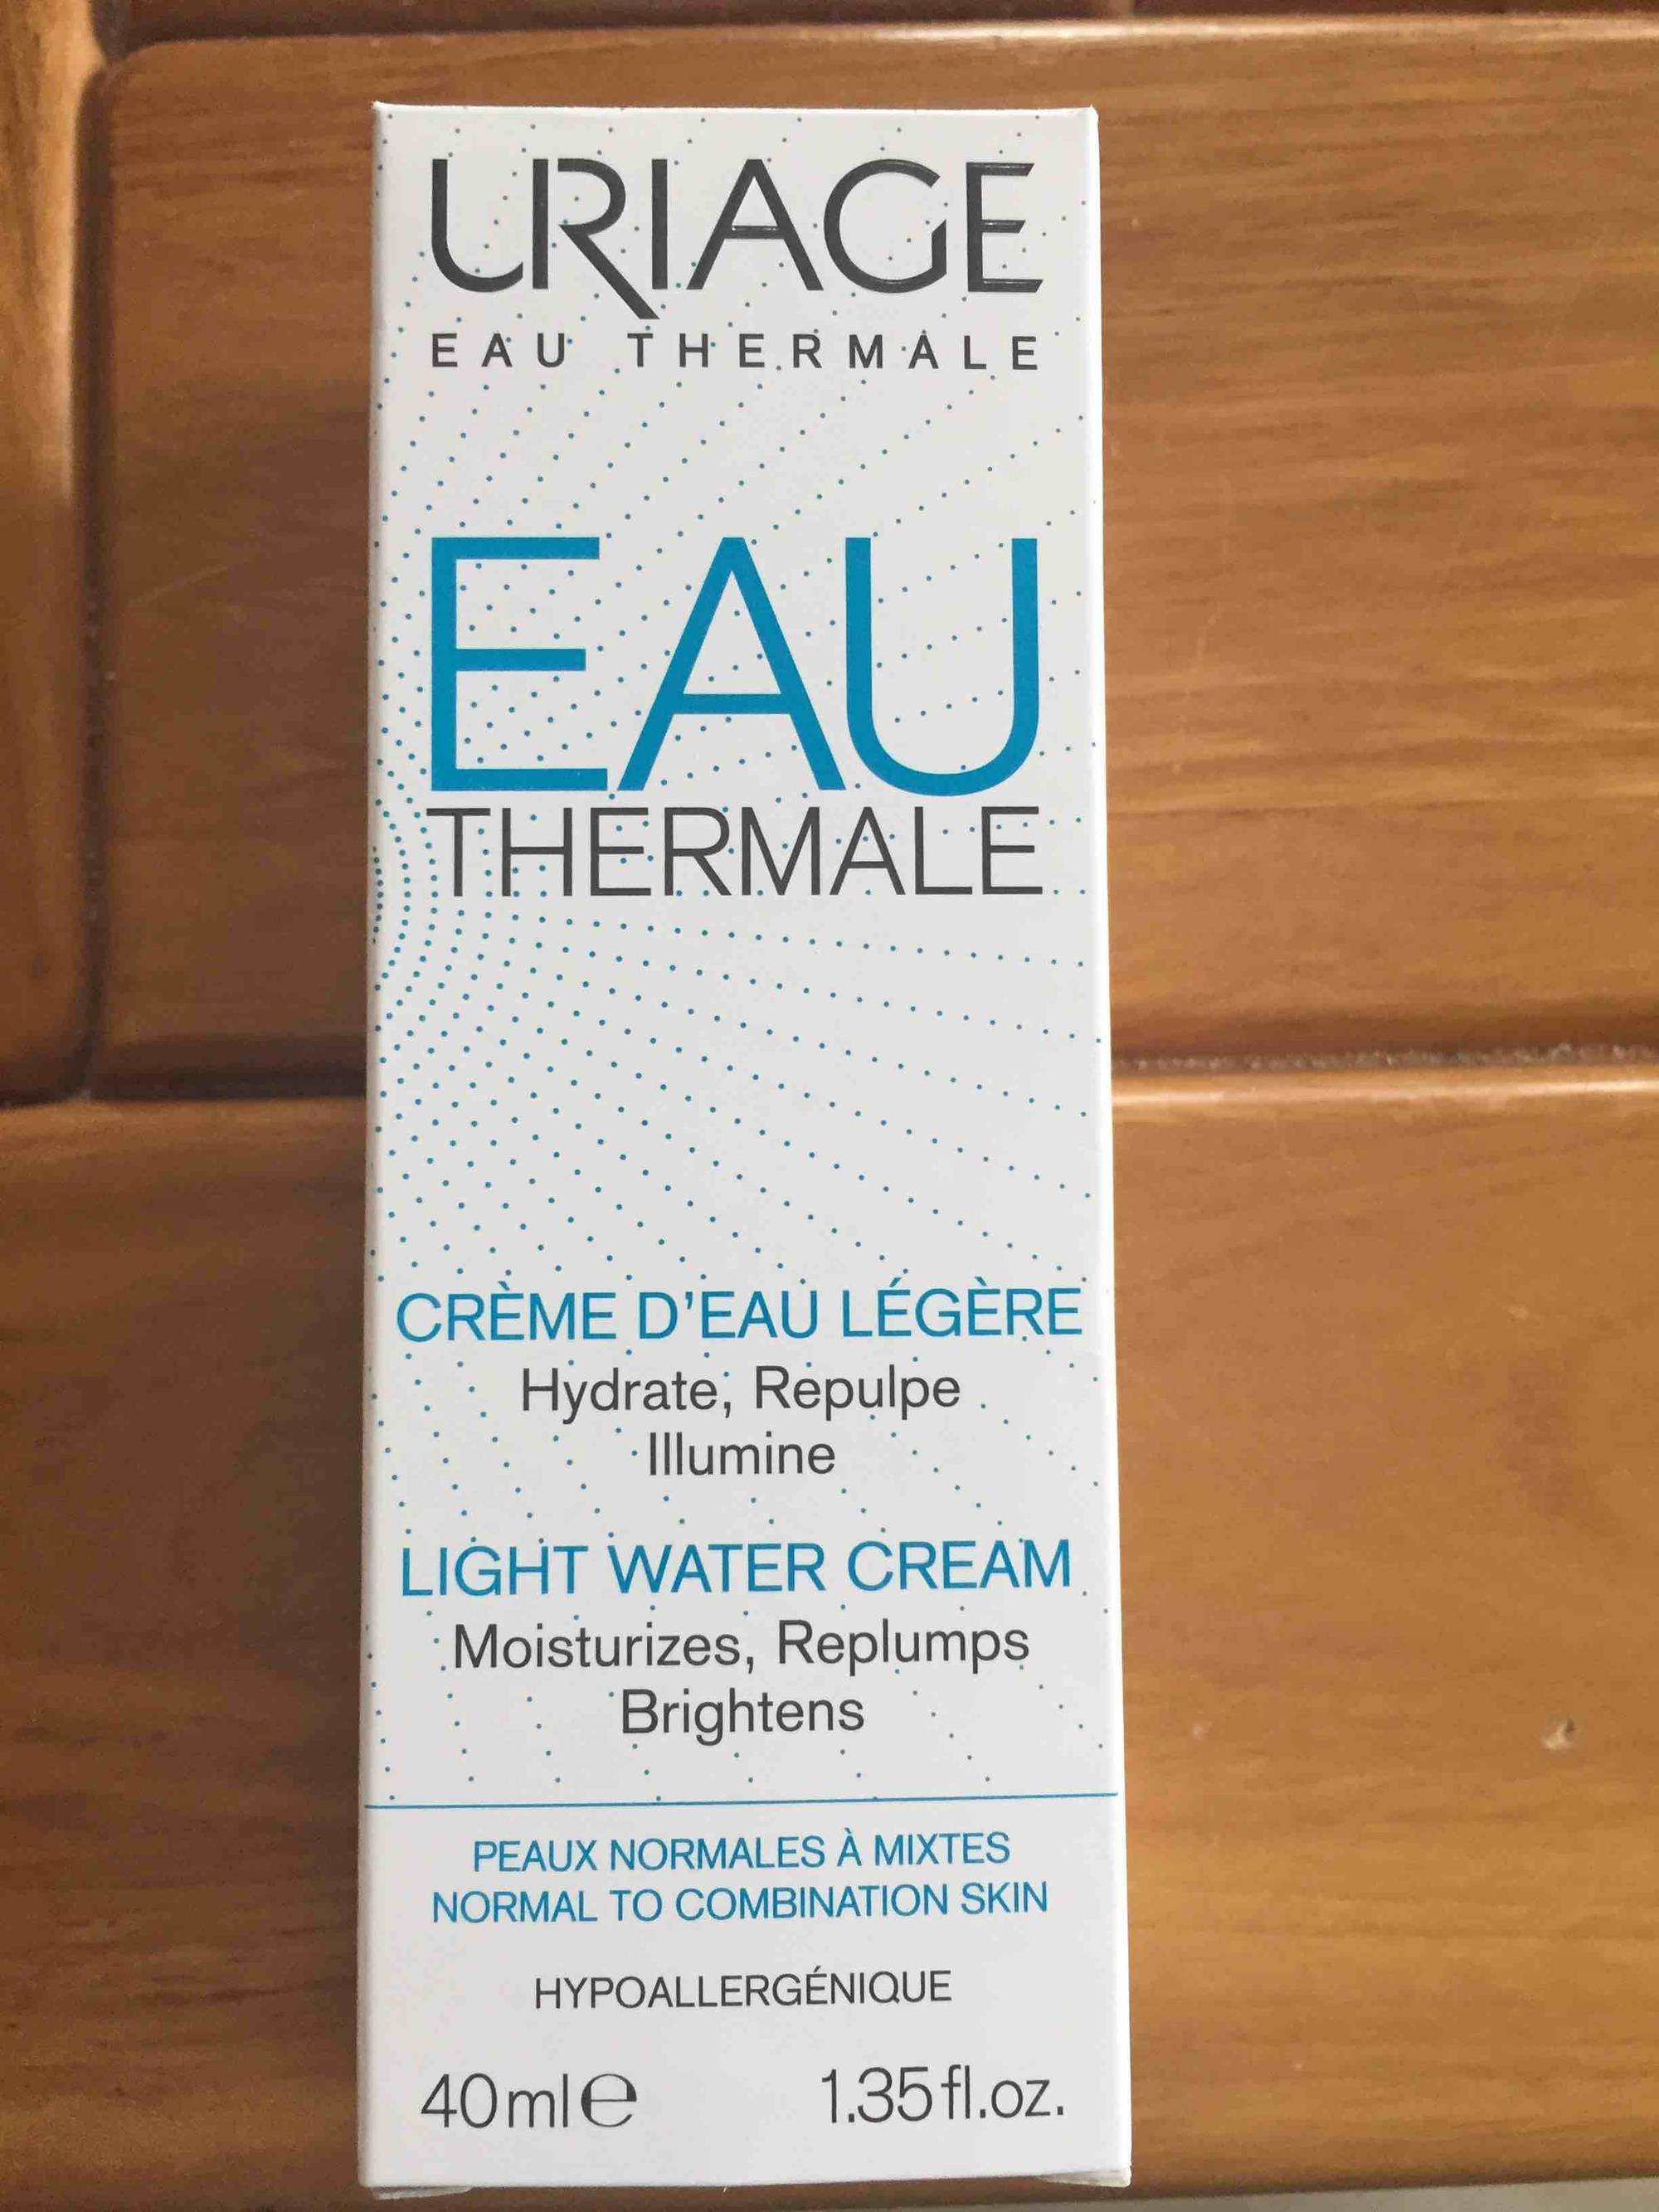 URIAGE - Eau thermale - Crème d'eau légère